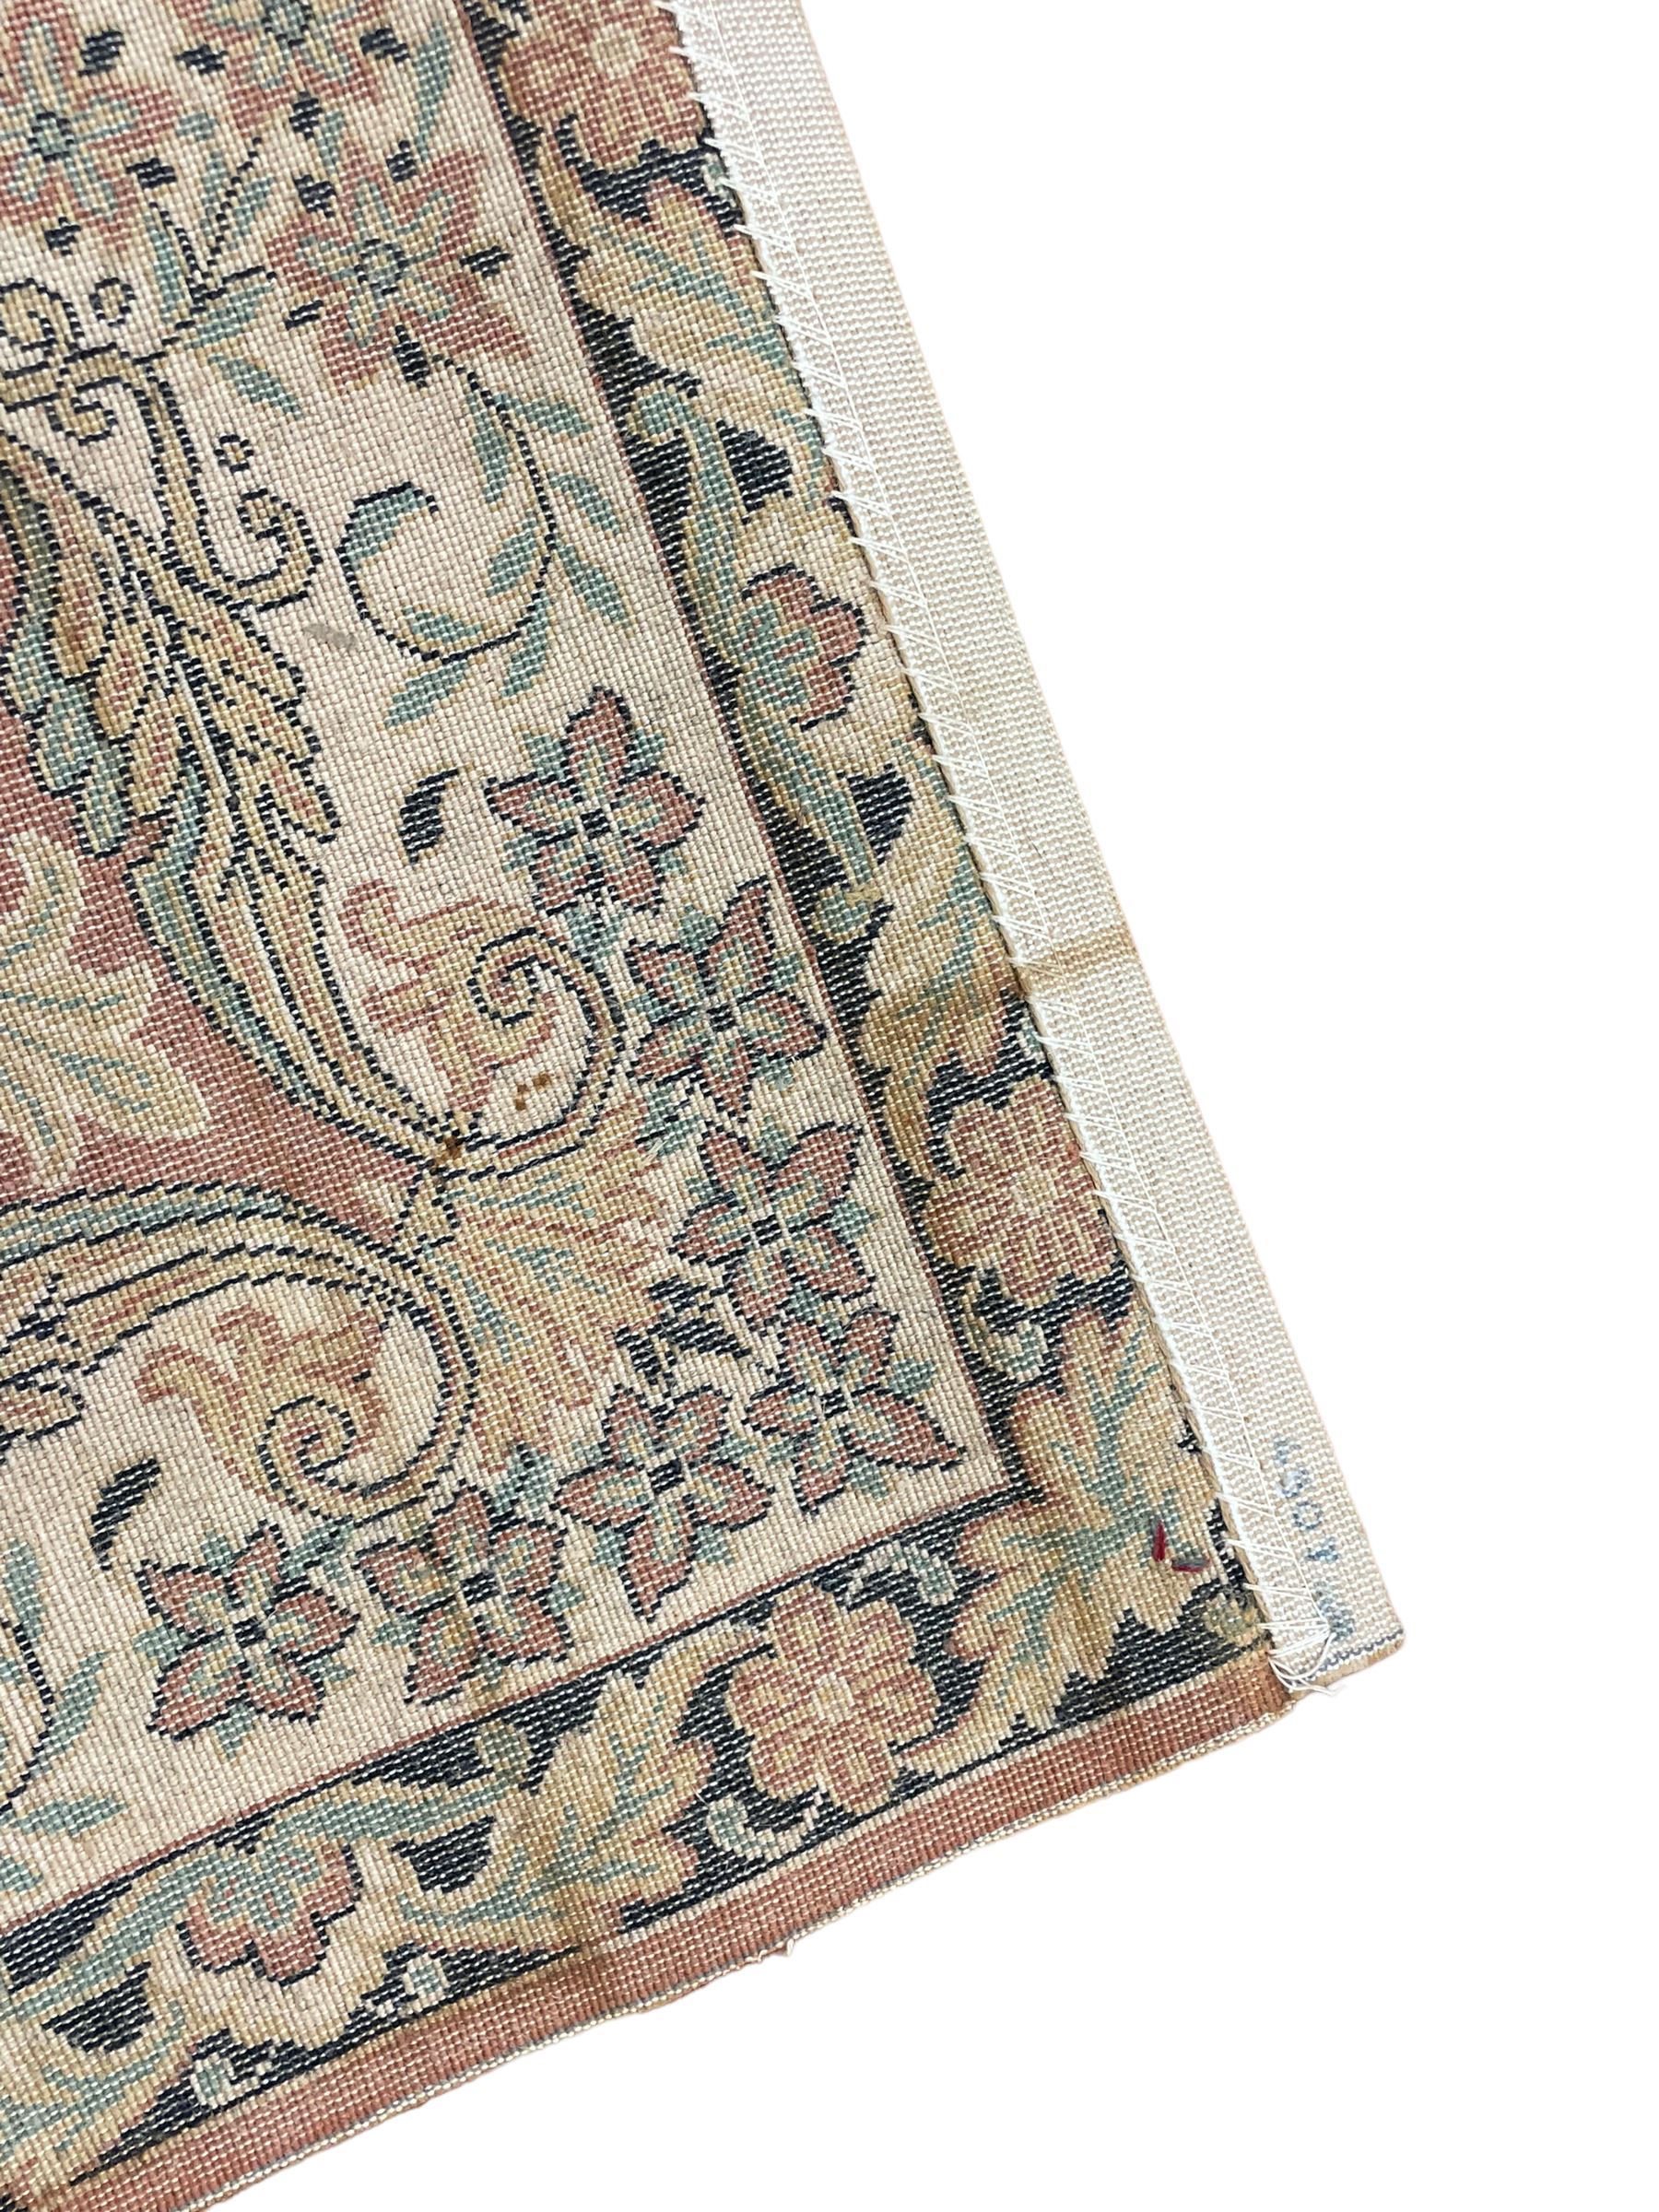 Persian design peach ground carpet - Image 5 of 9